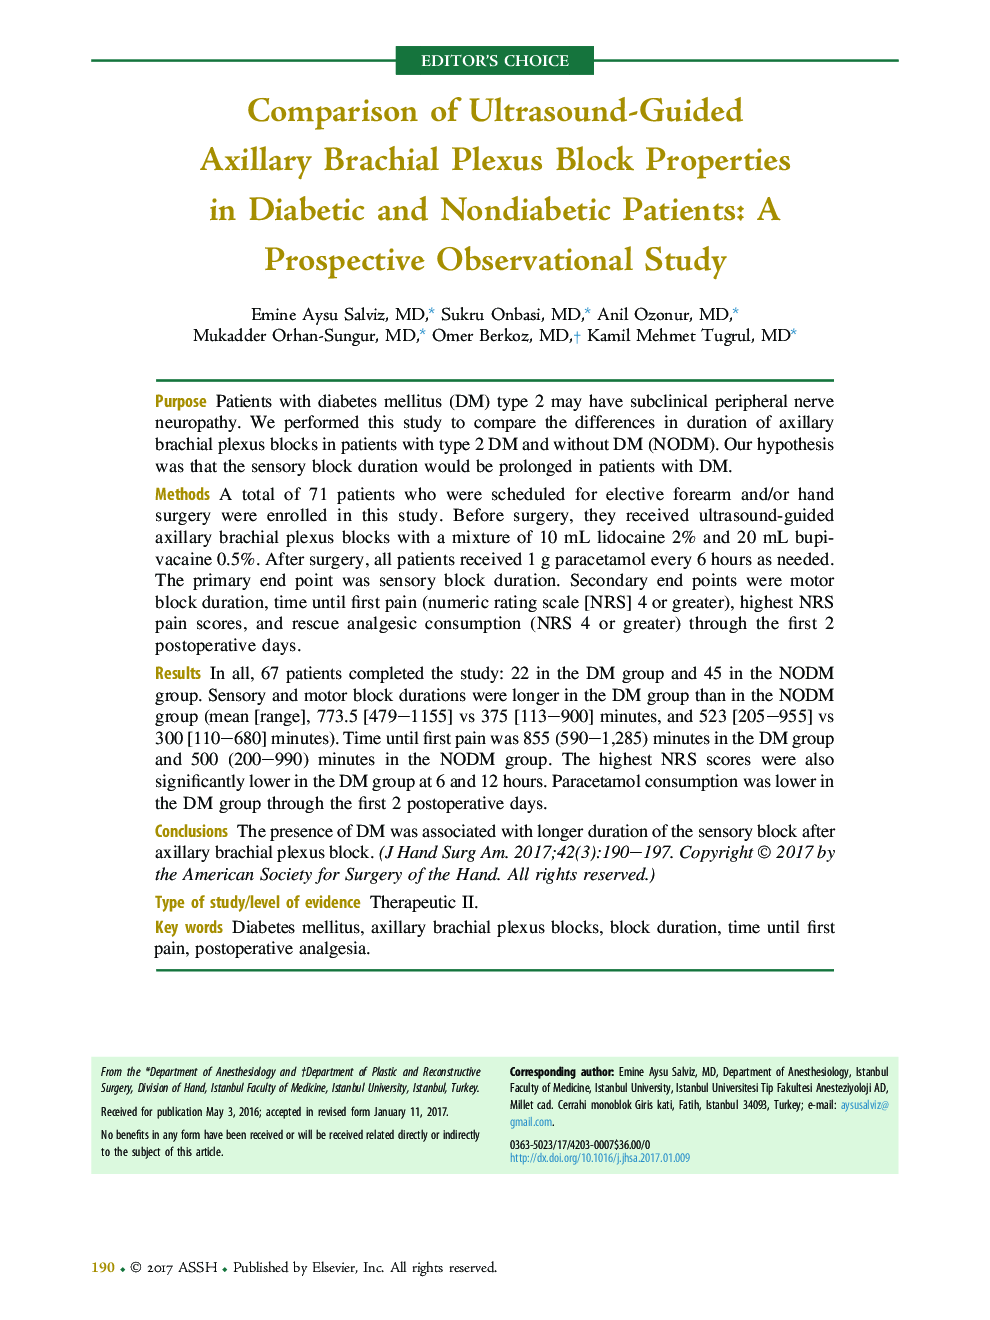 مقایسه ویژگی های بلوک انعقاد پیوند انعقادی سونوگرافی در بیماران دیابتی و غیر دیابتی: یک مطالعه آینده نگر 